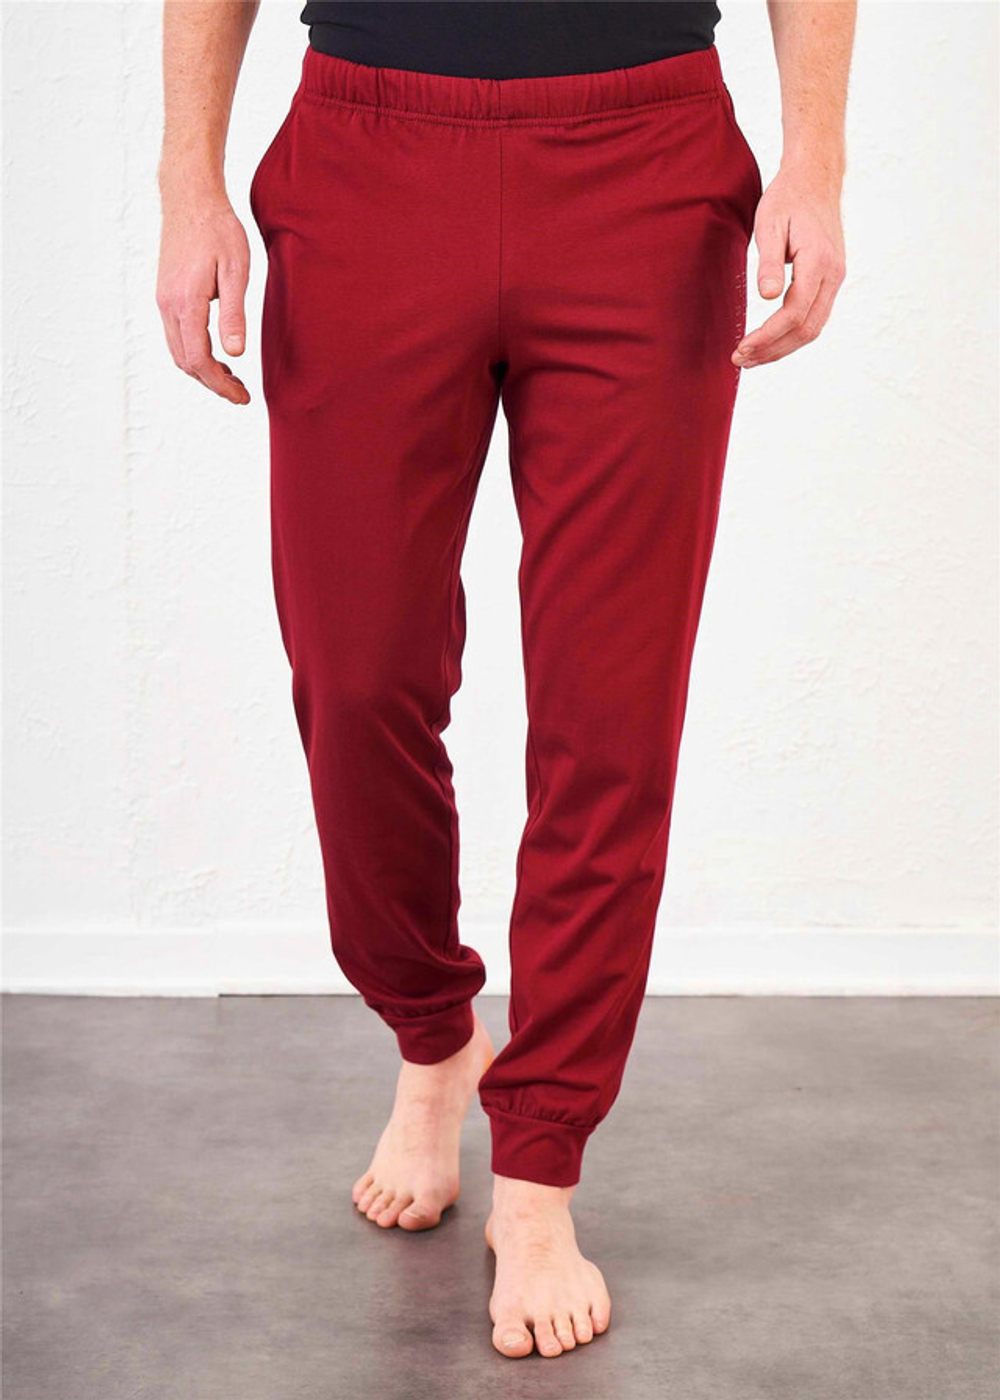 RELAX MODE / Брюки домашние мужские штаны хлопковые трико для дома - 09176